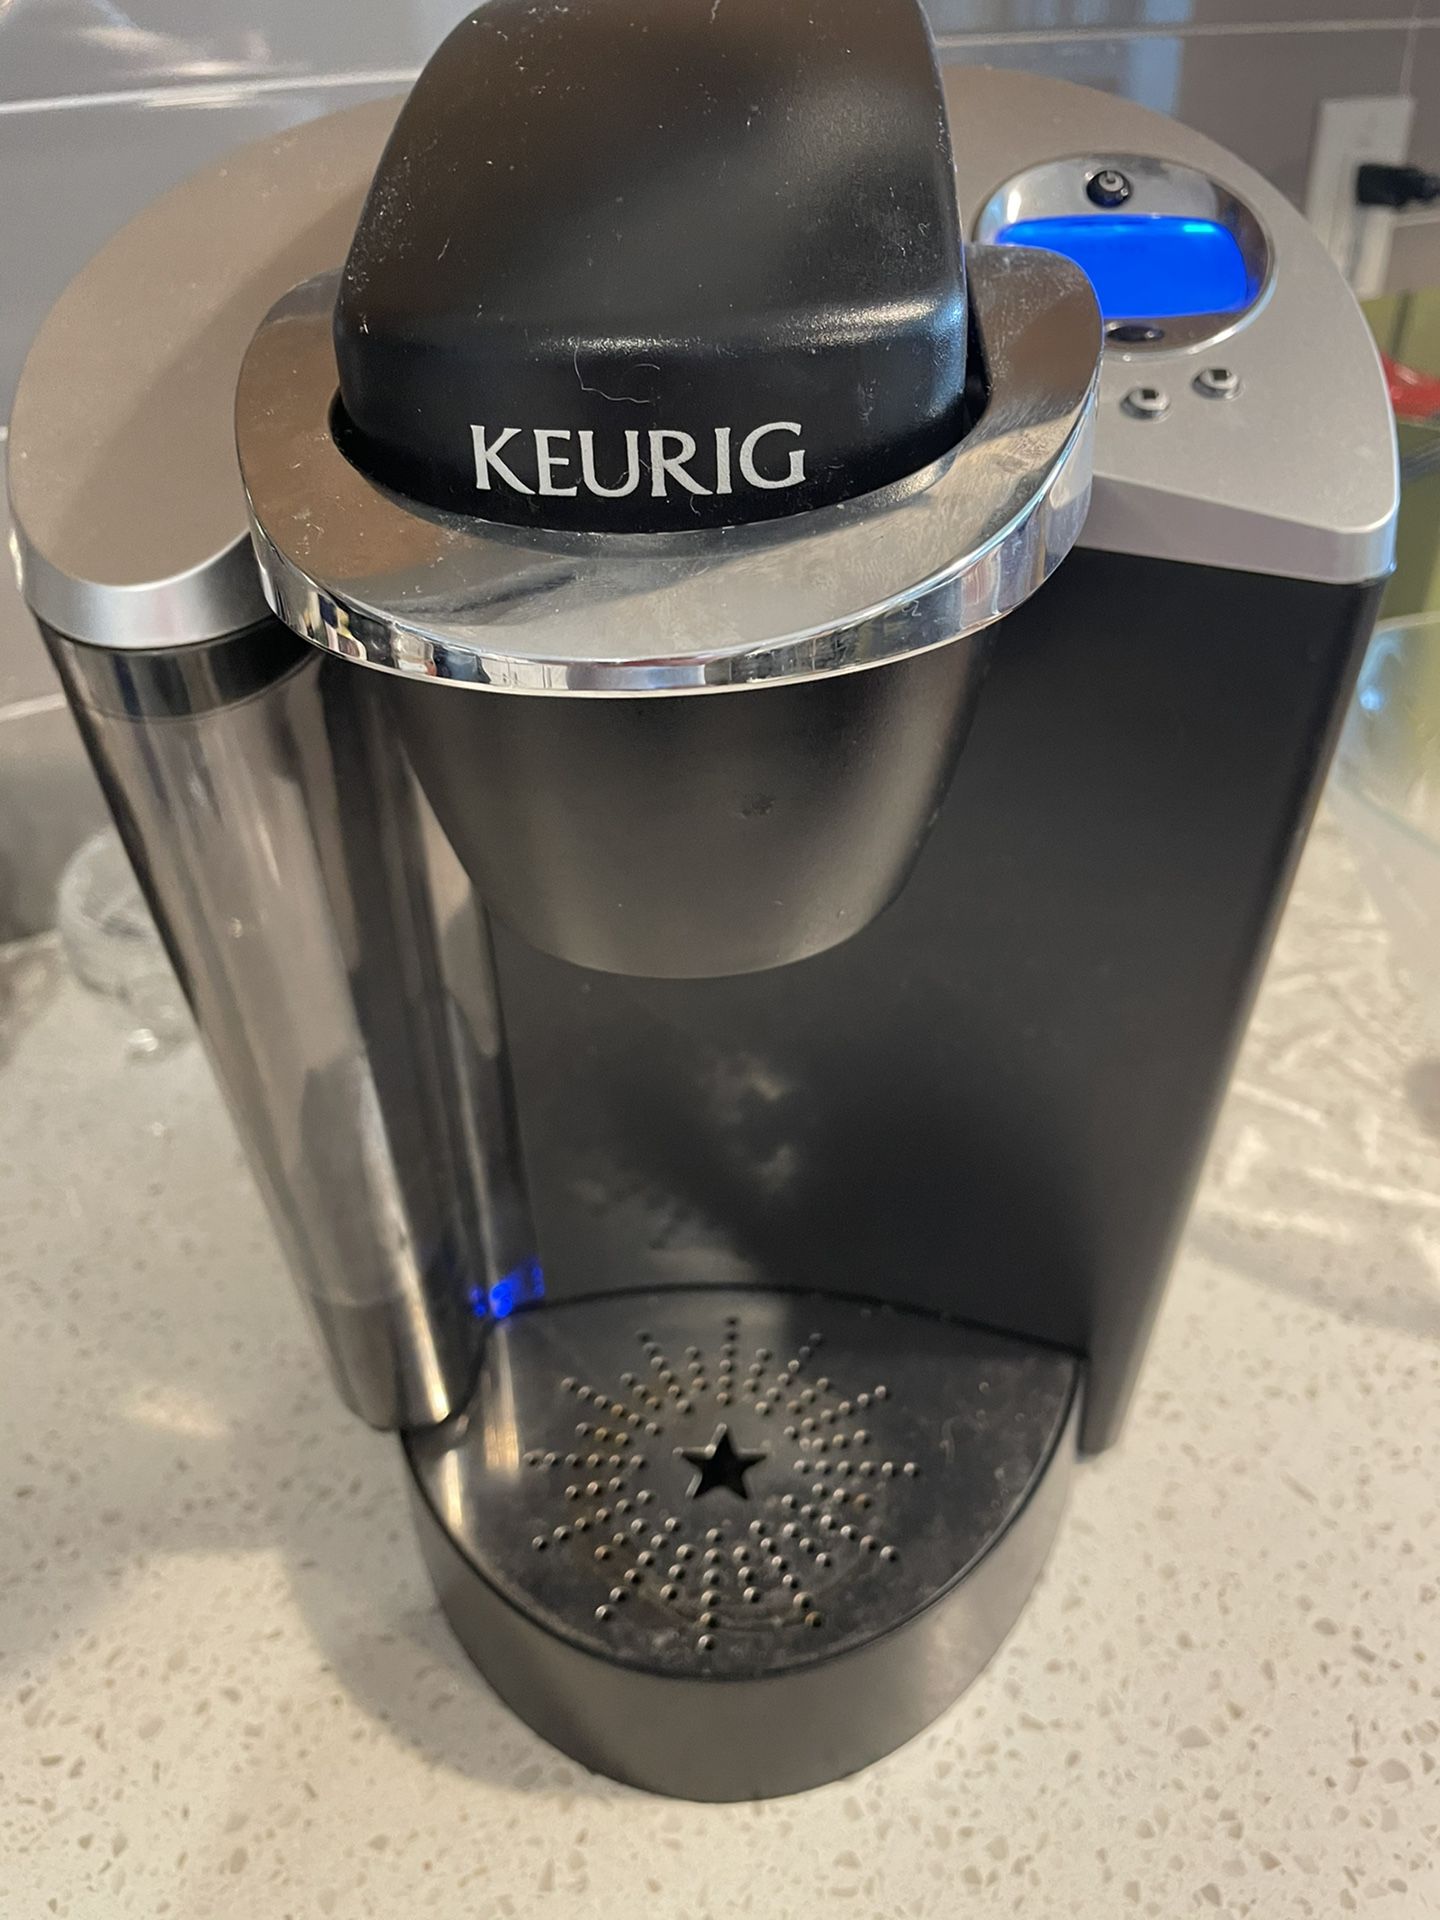 Keurig B60 Keurig B60 Special Edition Single Cup Coffee Maker Brewing System - Black